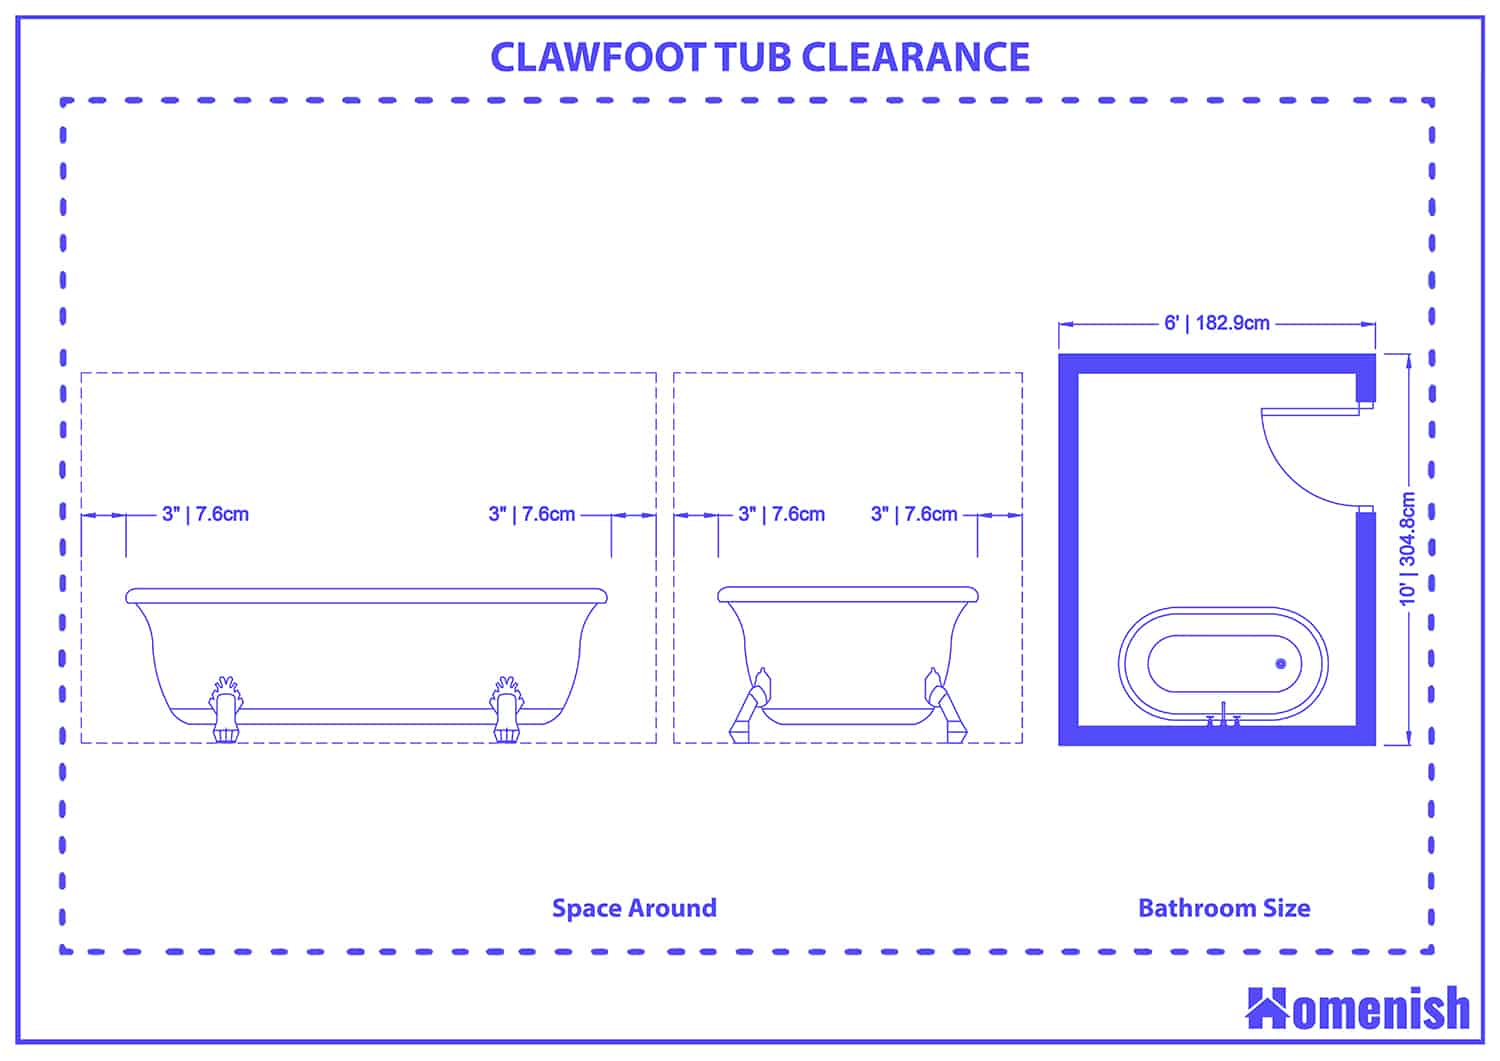 Clawfoor tub clearance